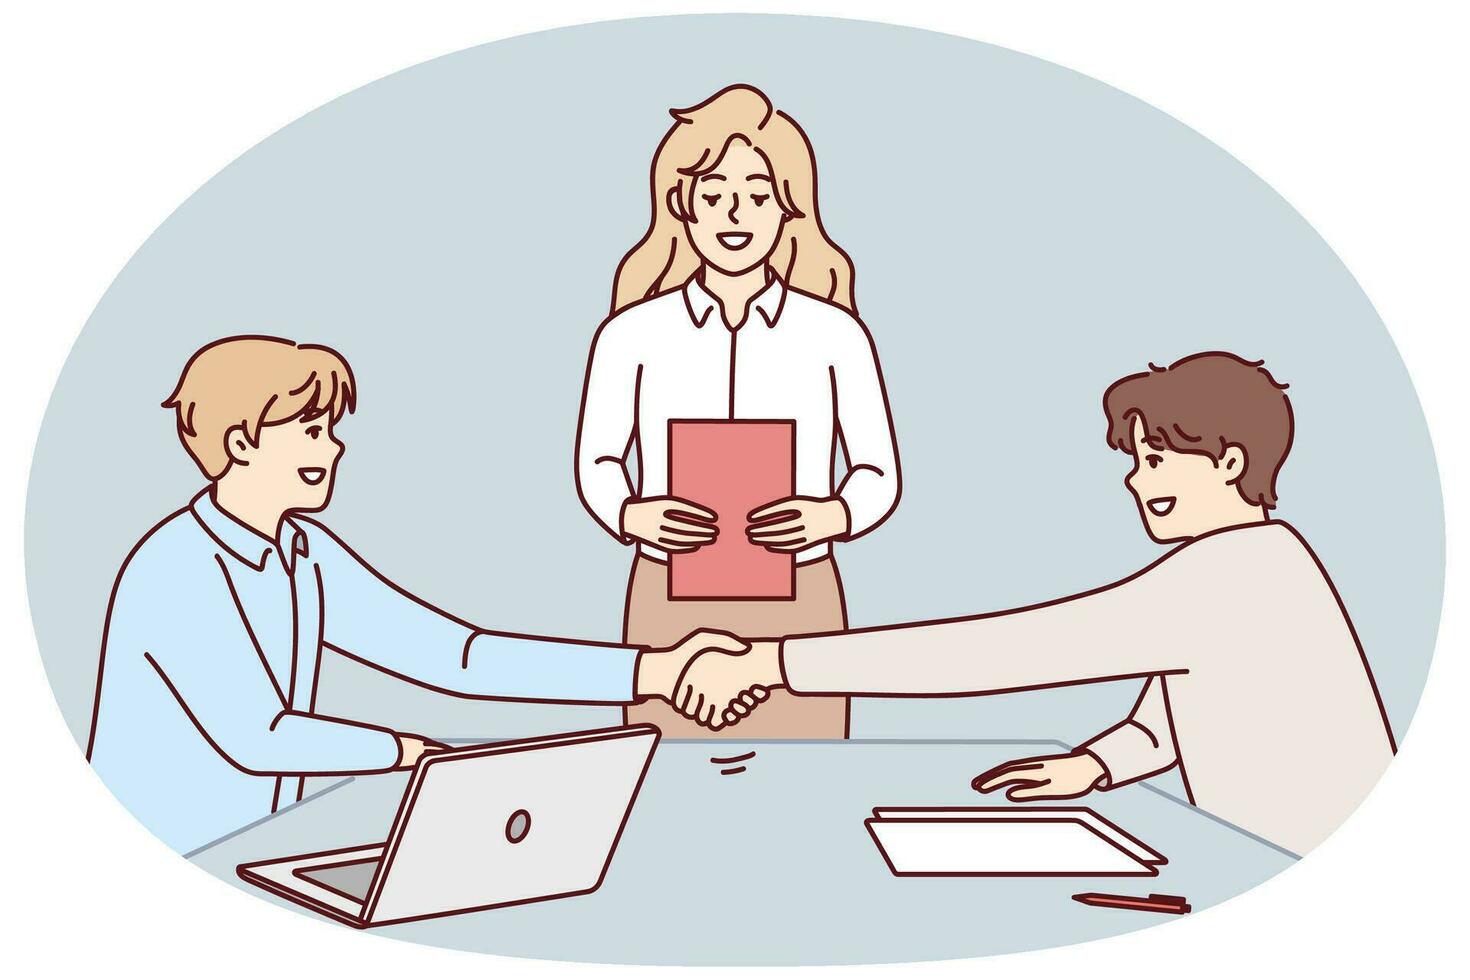 människor handslag stänga handla på kontor möte. leende affärsmän skaka händer göra avtal på genomgång. sysselsättning och partnerskap. vektor illustration.